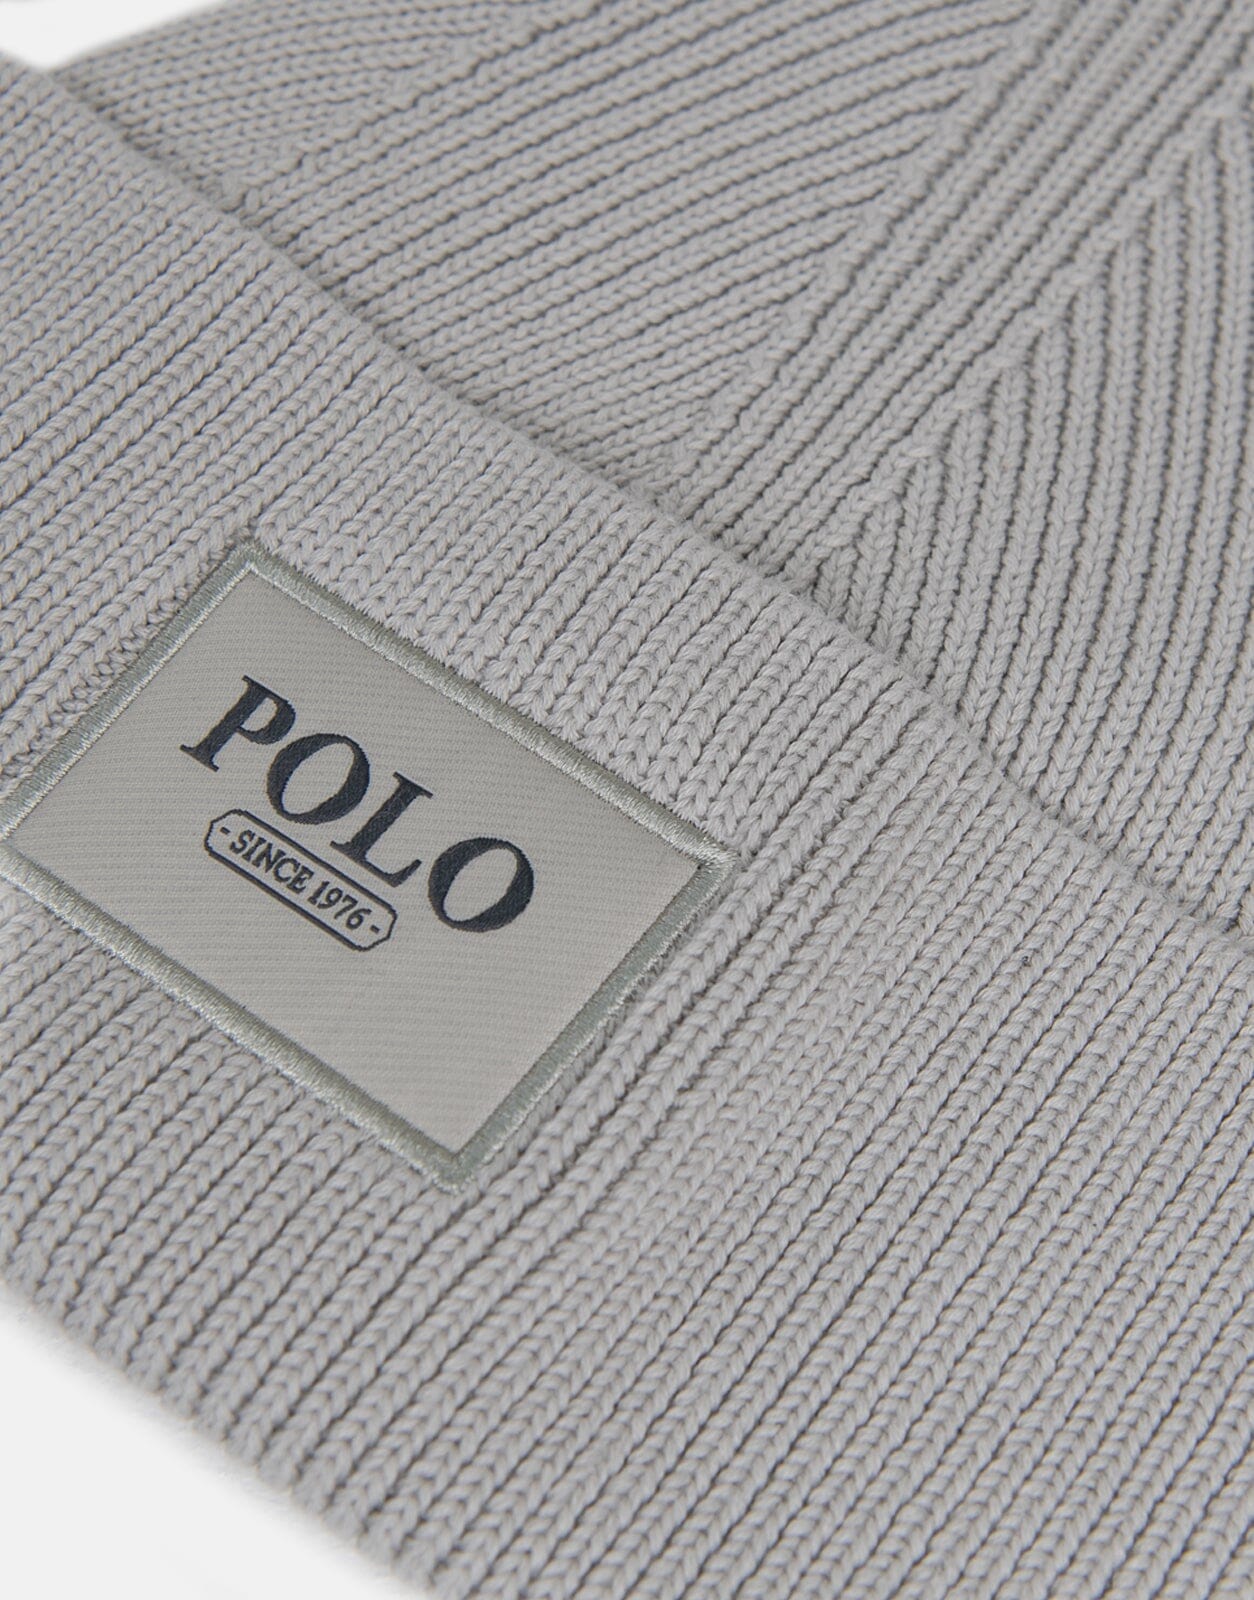 Polo Wide Cuff Beanie Grey - Subwear